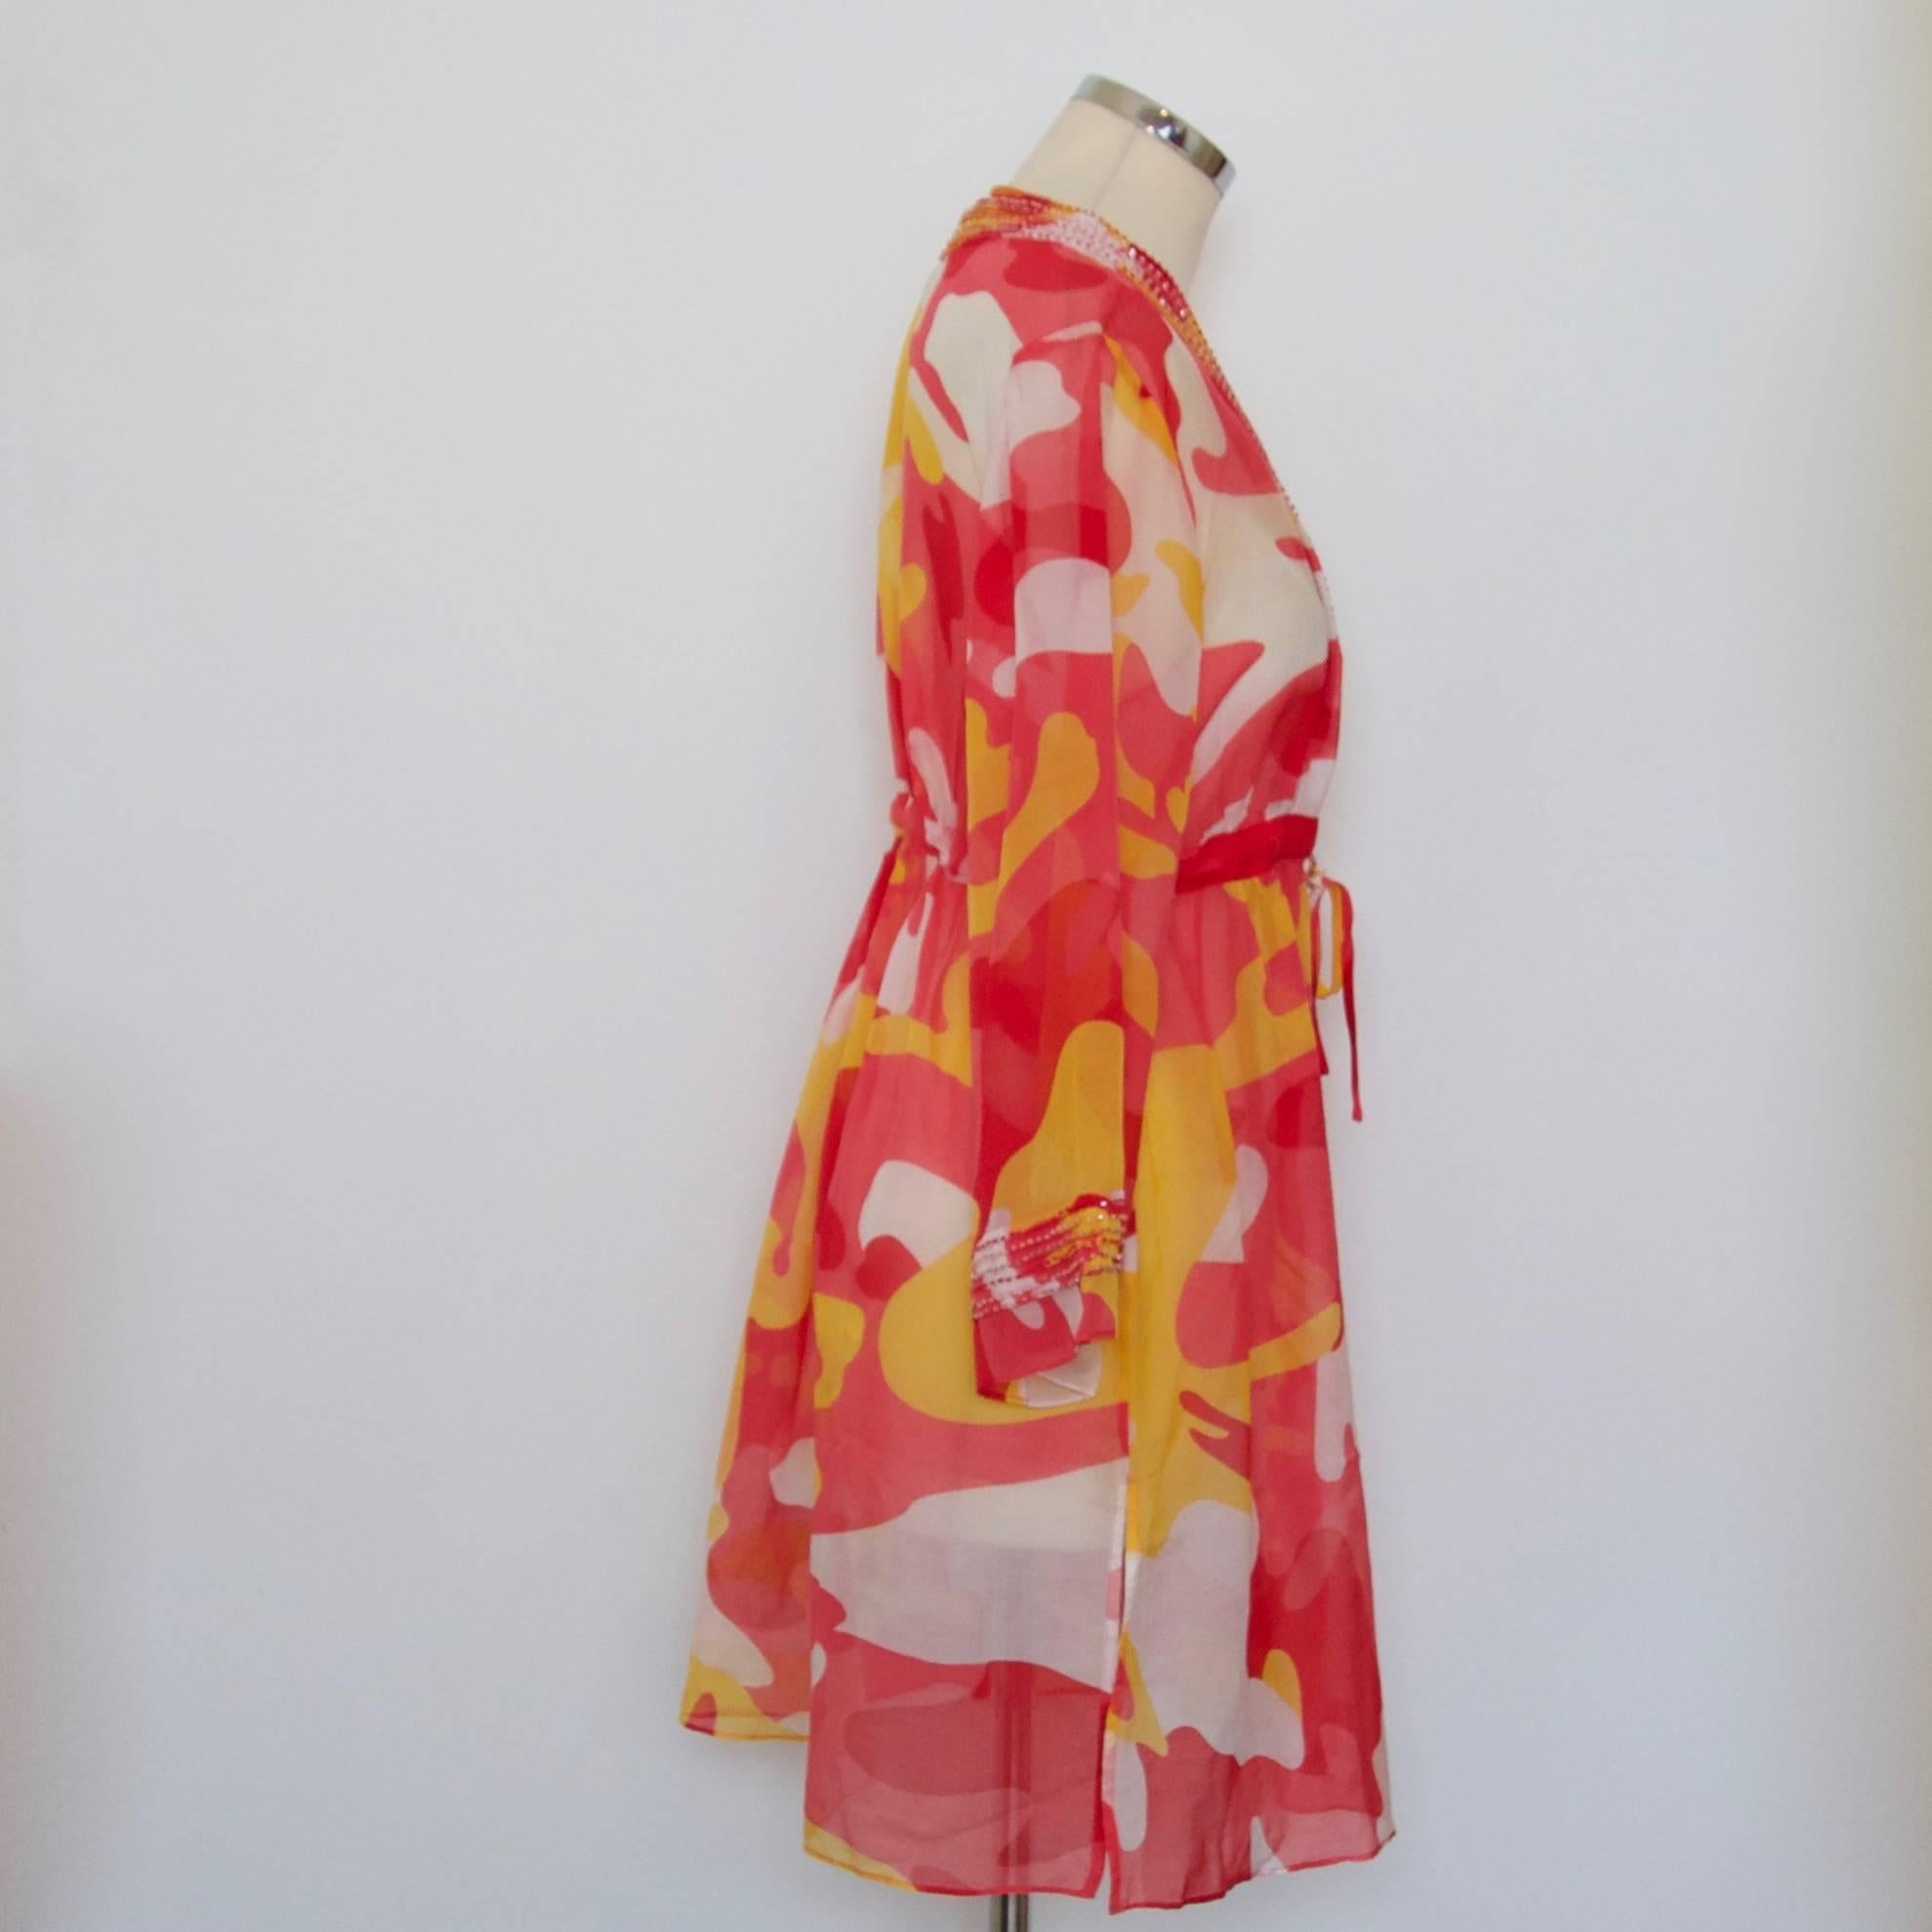 Diane Von Furstenberg Andy Warhol print kaftan

Size M

49% Silk
51% Cotton